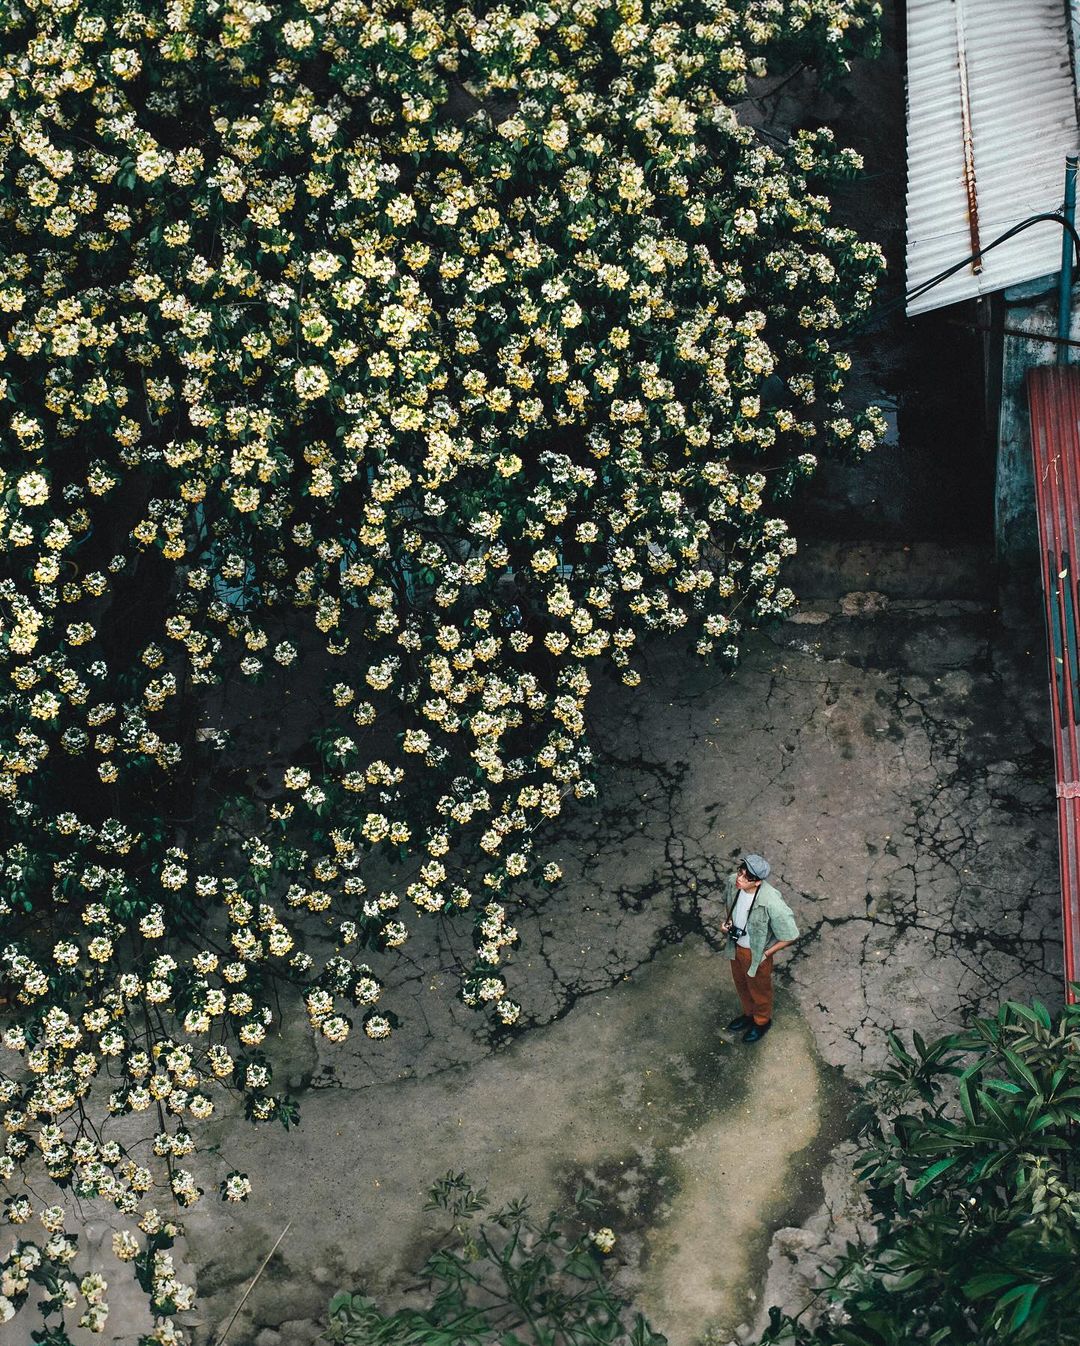 Ngoài hoa ban, hoa sưa, tháng 4 ở Hà Nội còn là mùa của hoa bún, hay còn gọi là bạch hoa hay màn màn. Hoa bún mọc thành từng chùm tròn xoe ở phía đầu cành. Ảnh: Instagram Mituchan